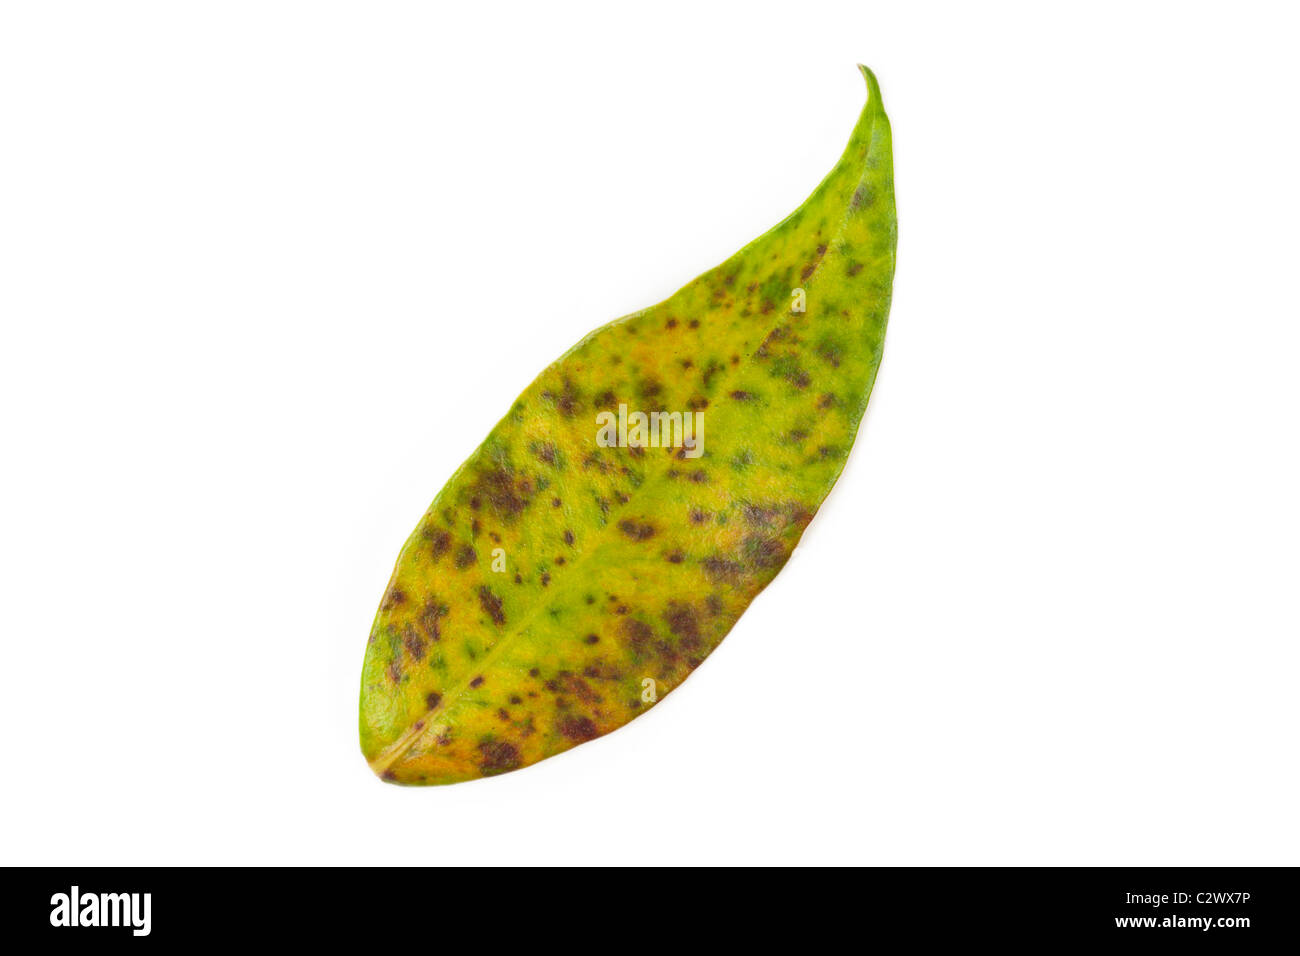 Jasmine rust pustules on jasmine leaf upper surface on a white background Stock Photo